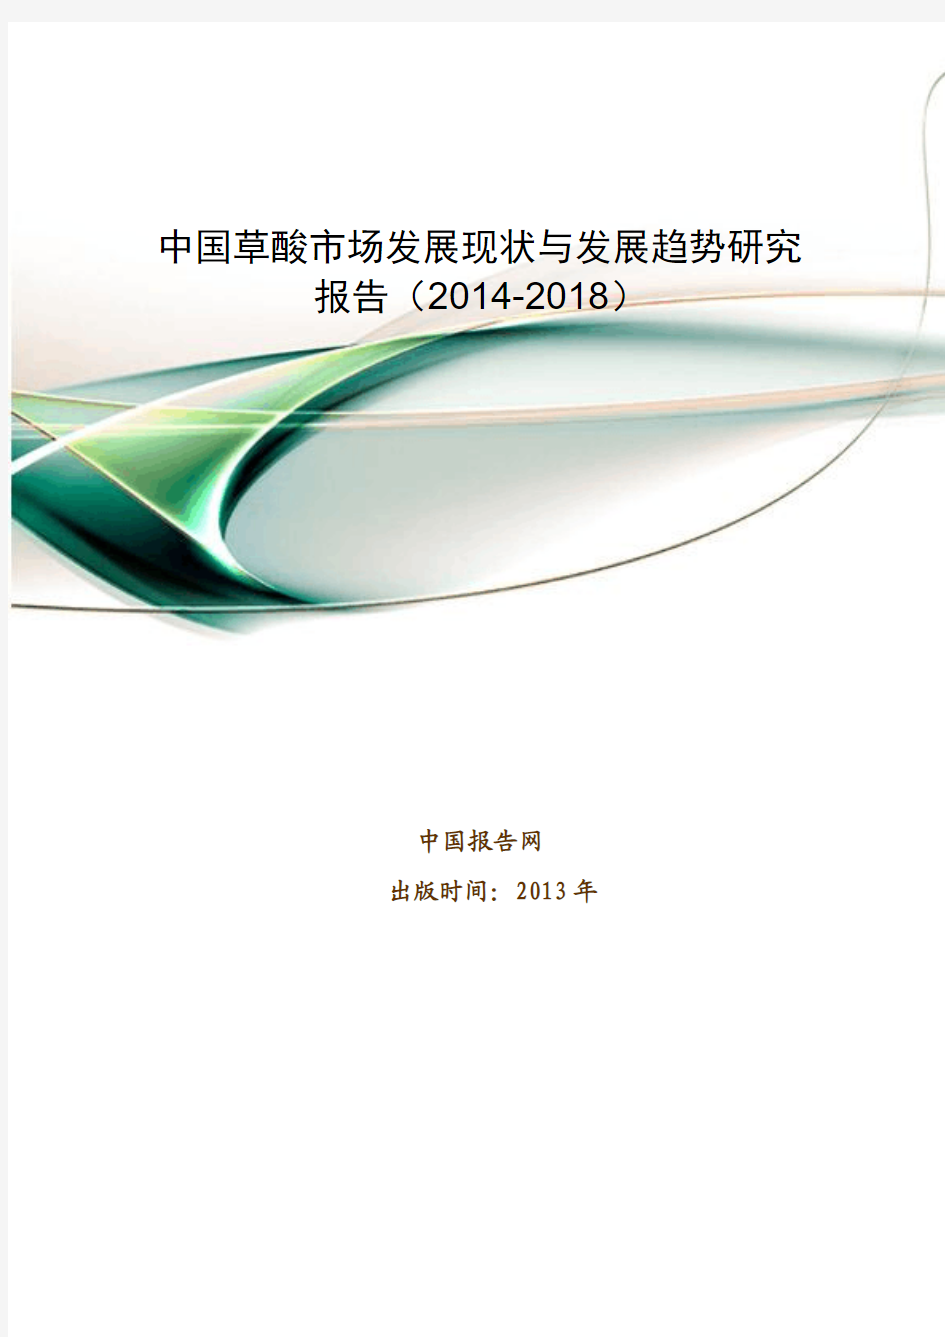 中国草酸市场发展现状与发展趋势研究报告(2014-2018)